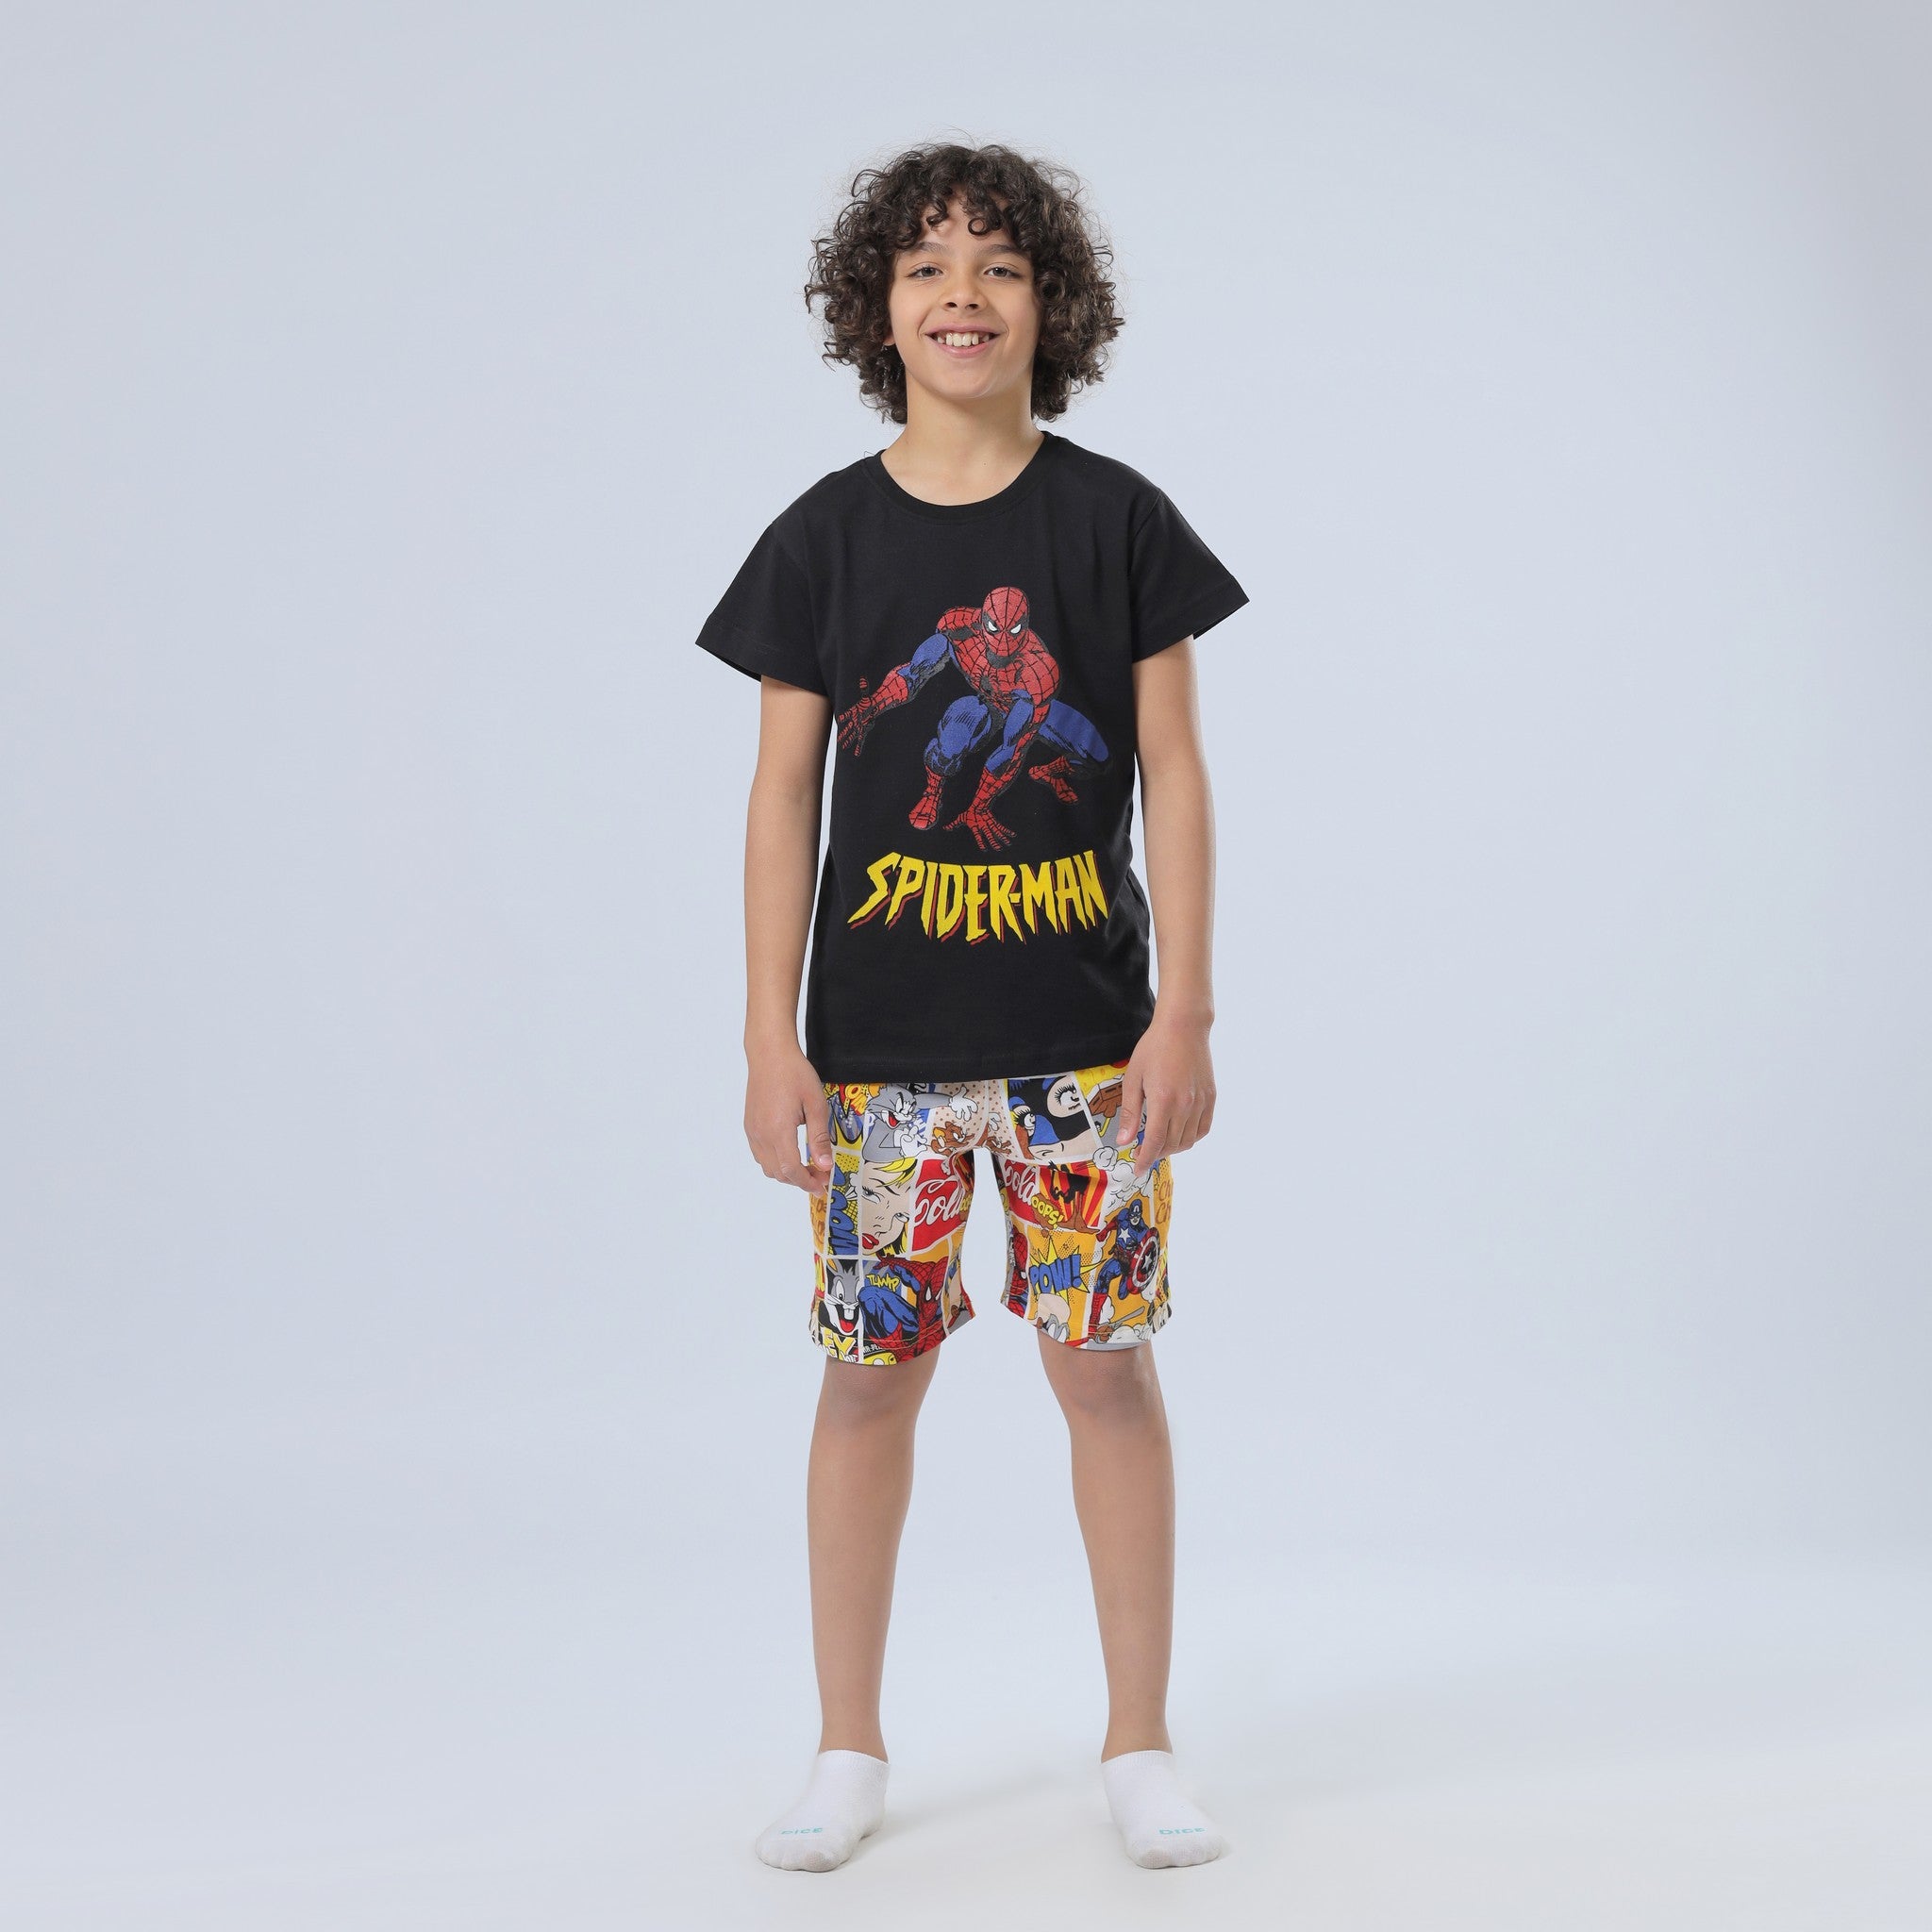 Spiderman Print Top and Short Pajama